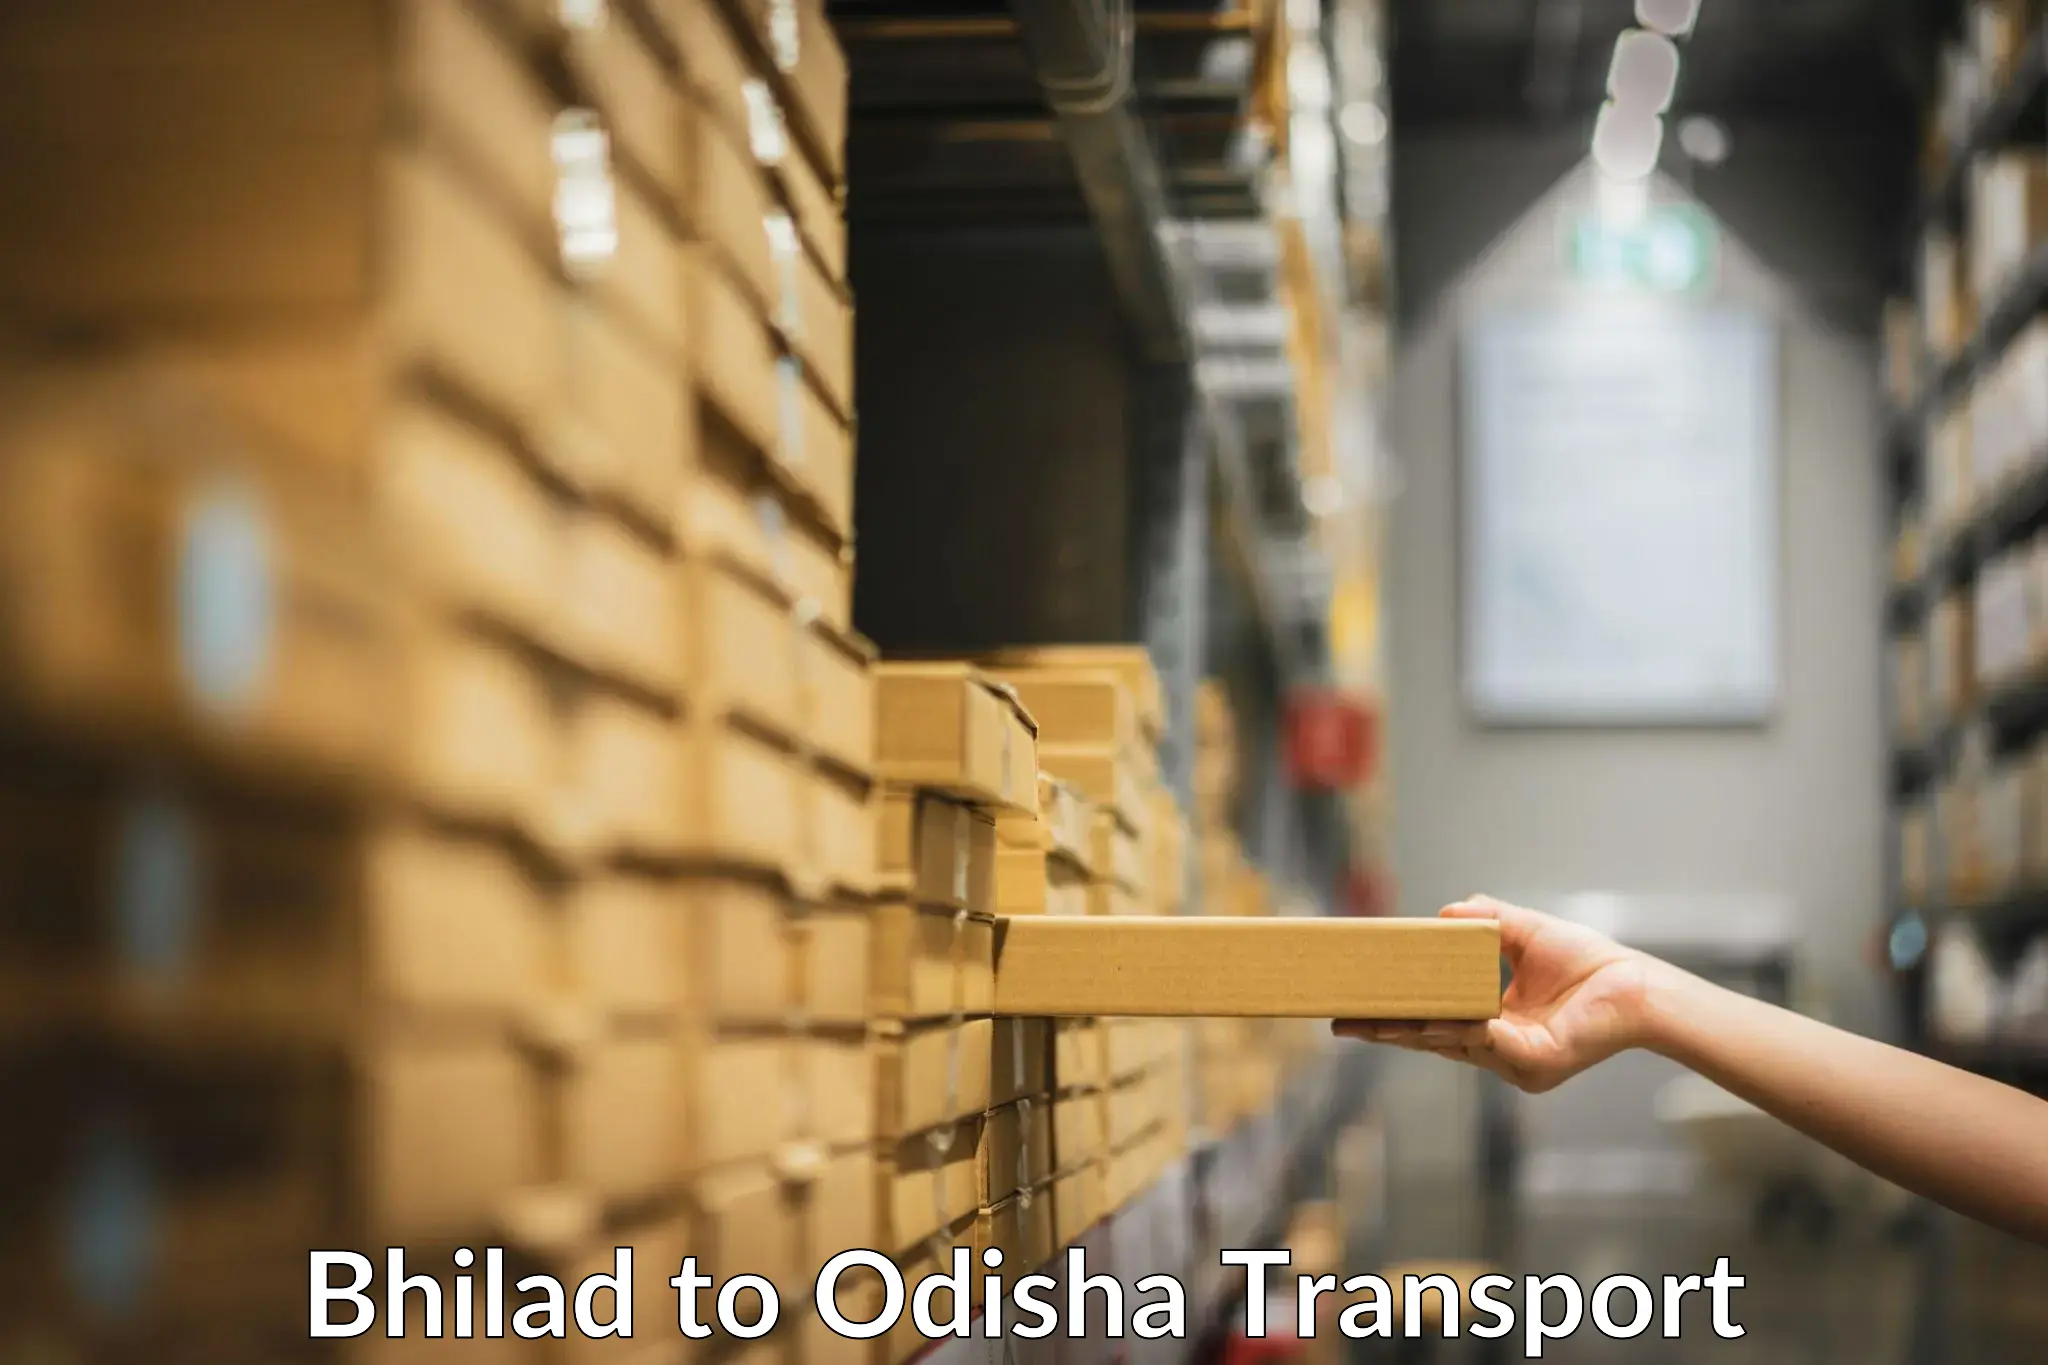 Parcel transport services Bhilad to Odisha